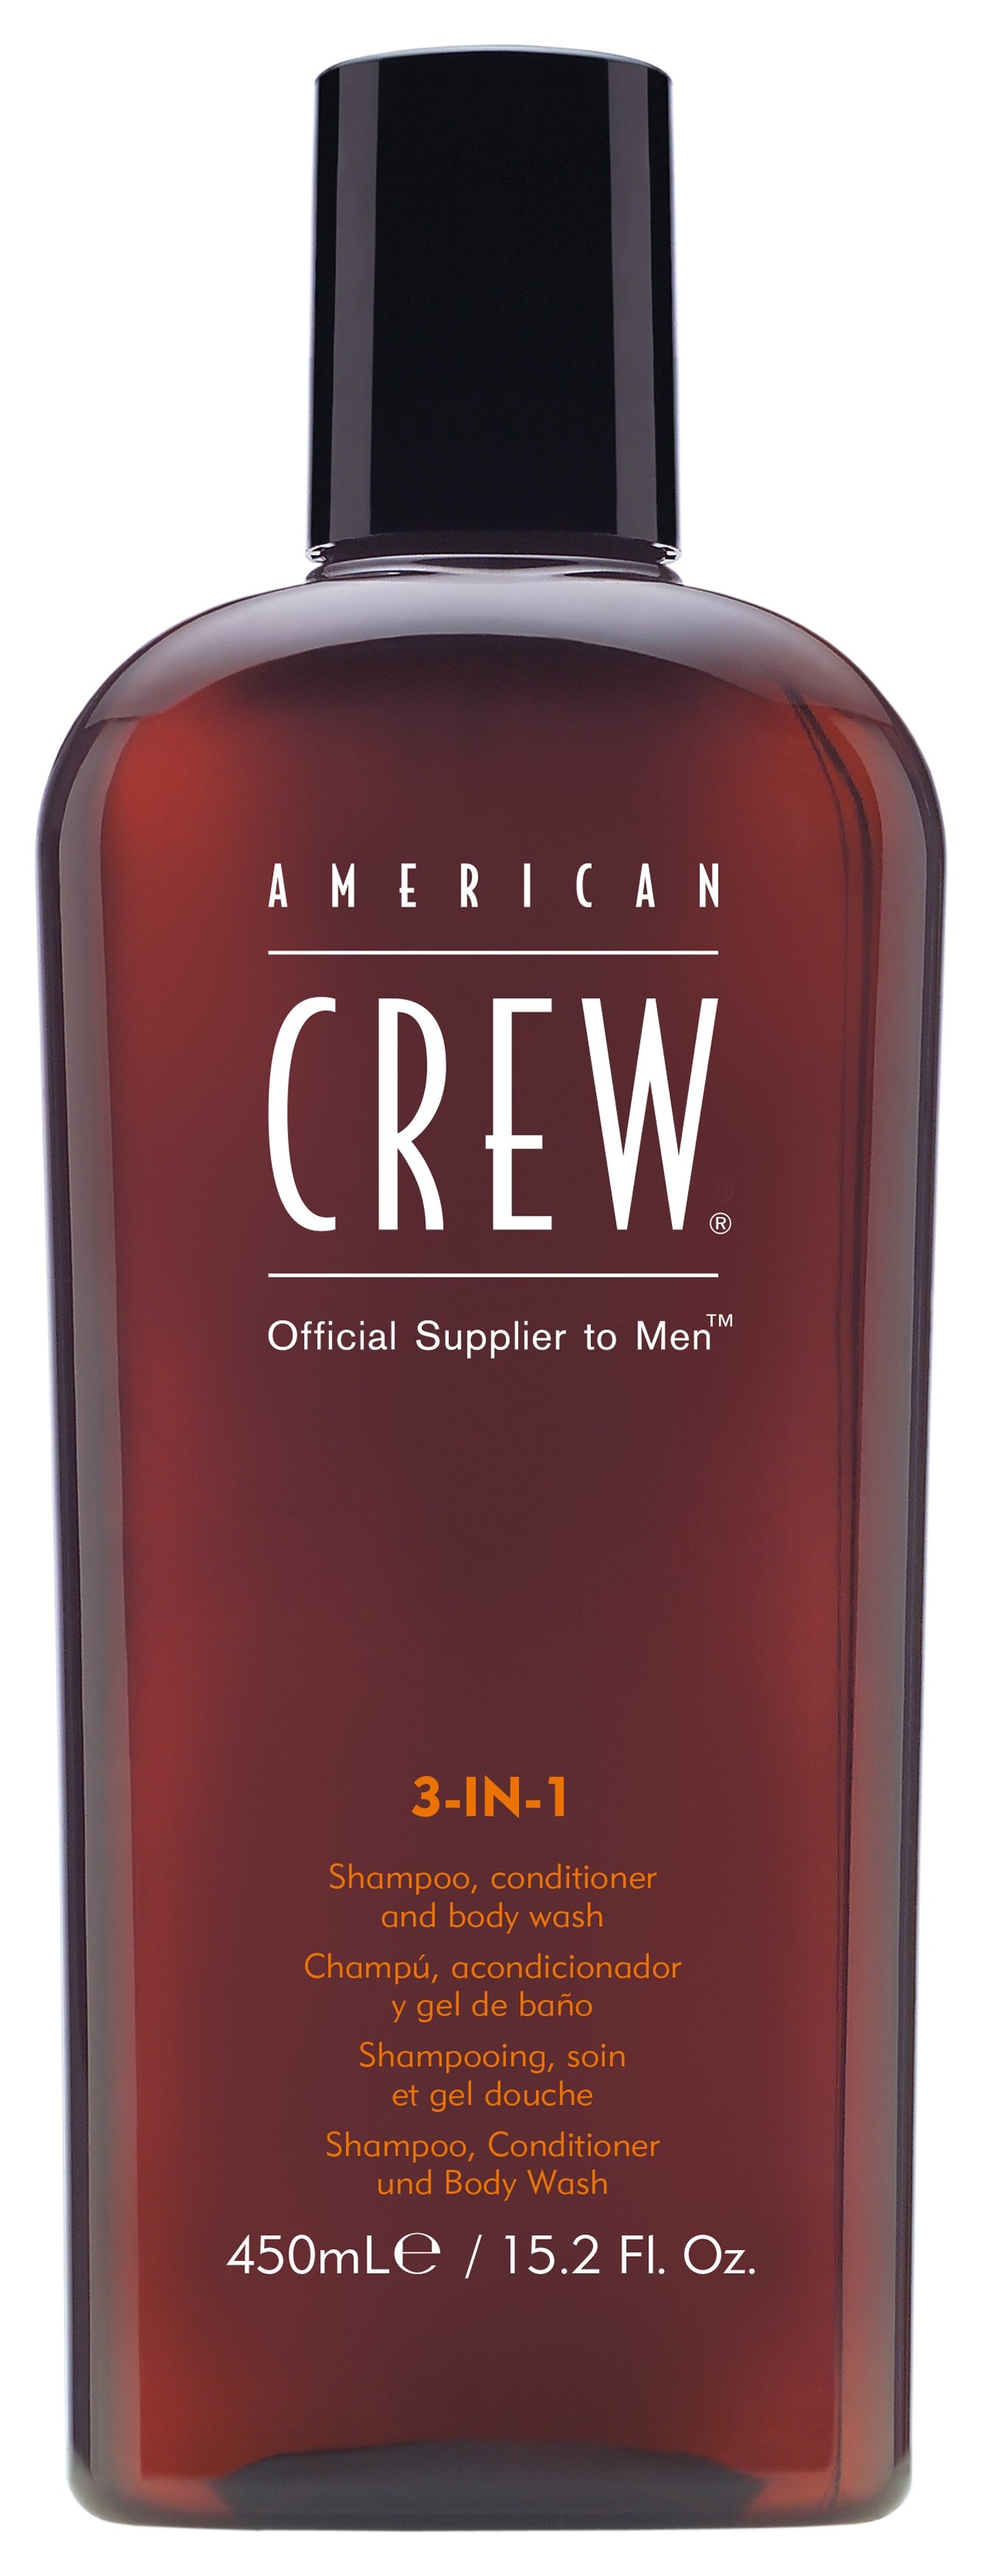 Гели для душа:  AMERICAN CREW -  Шампунь, кондиционер и гель для душа 3-в-1 American Crew Classic 3 IN 1 (450 мл) (450 мл)